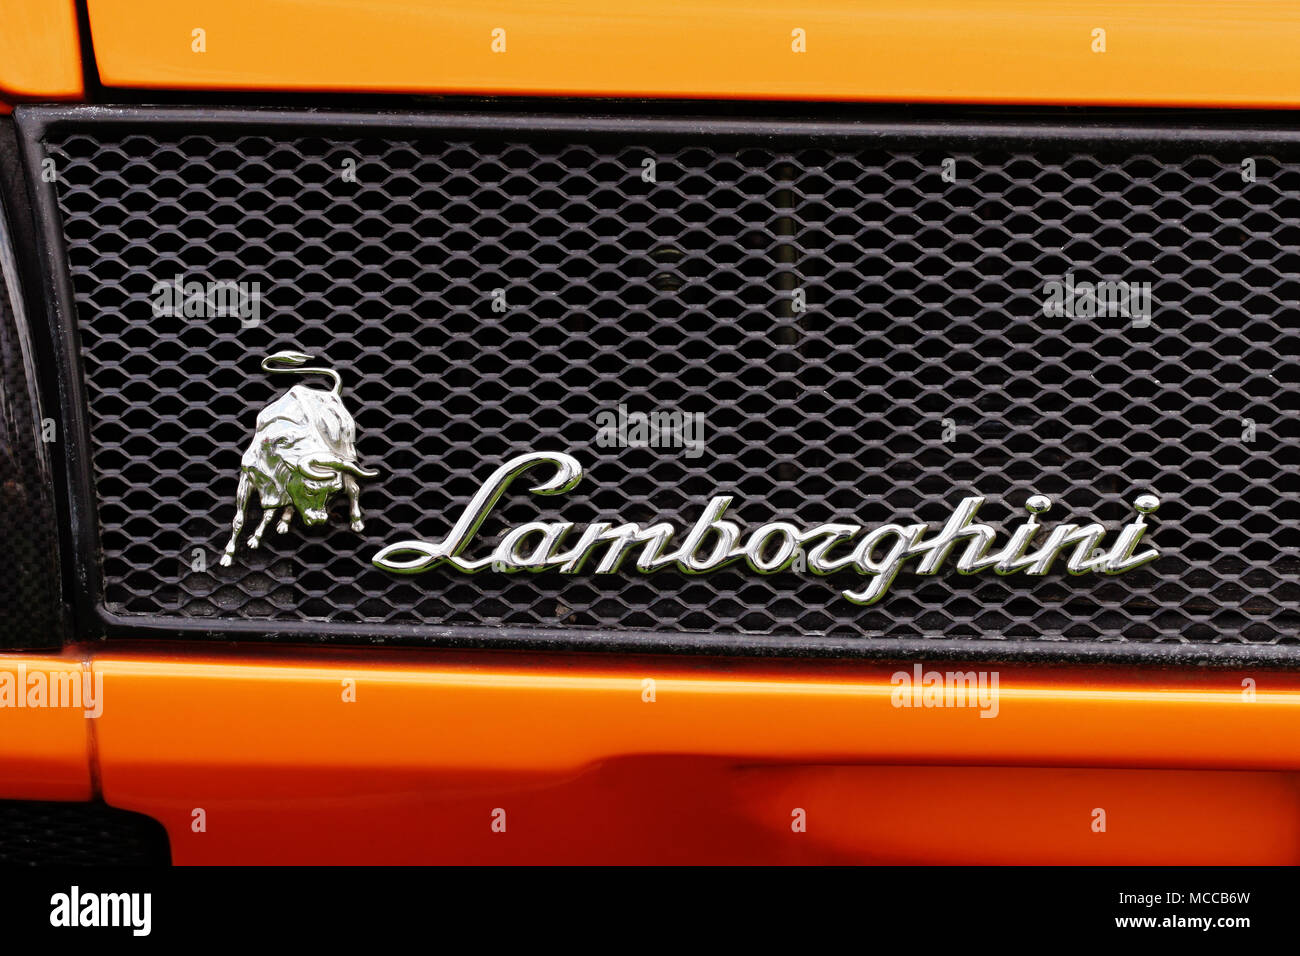 Primo piano dettaglio della Lamborghini stemma emblema di branding e il famoso Lamborghini toro simbolo mascotte sulla parte posteriore di un arancione Lamborghini Diablo GT. Foto Stock